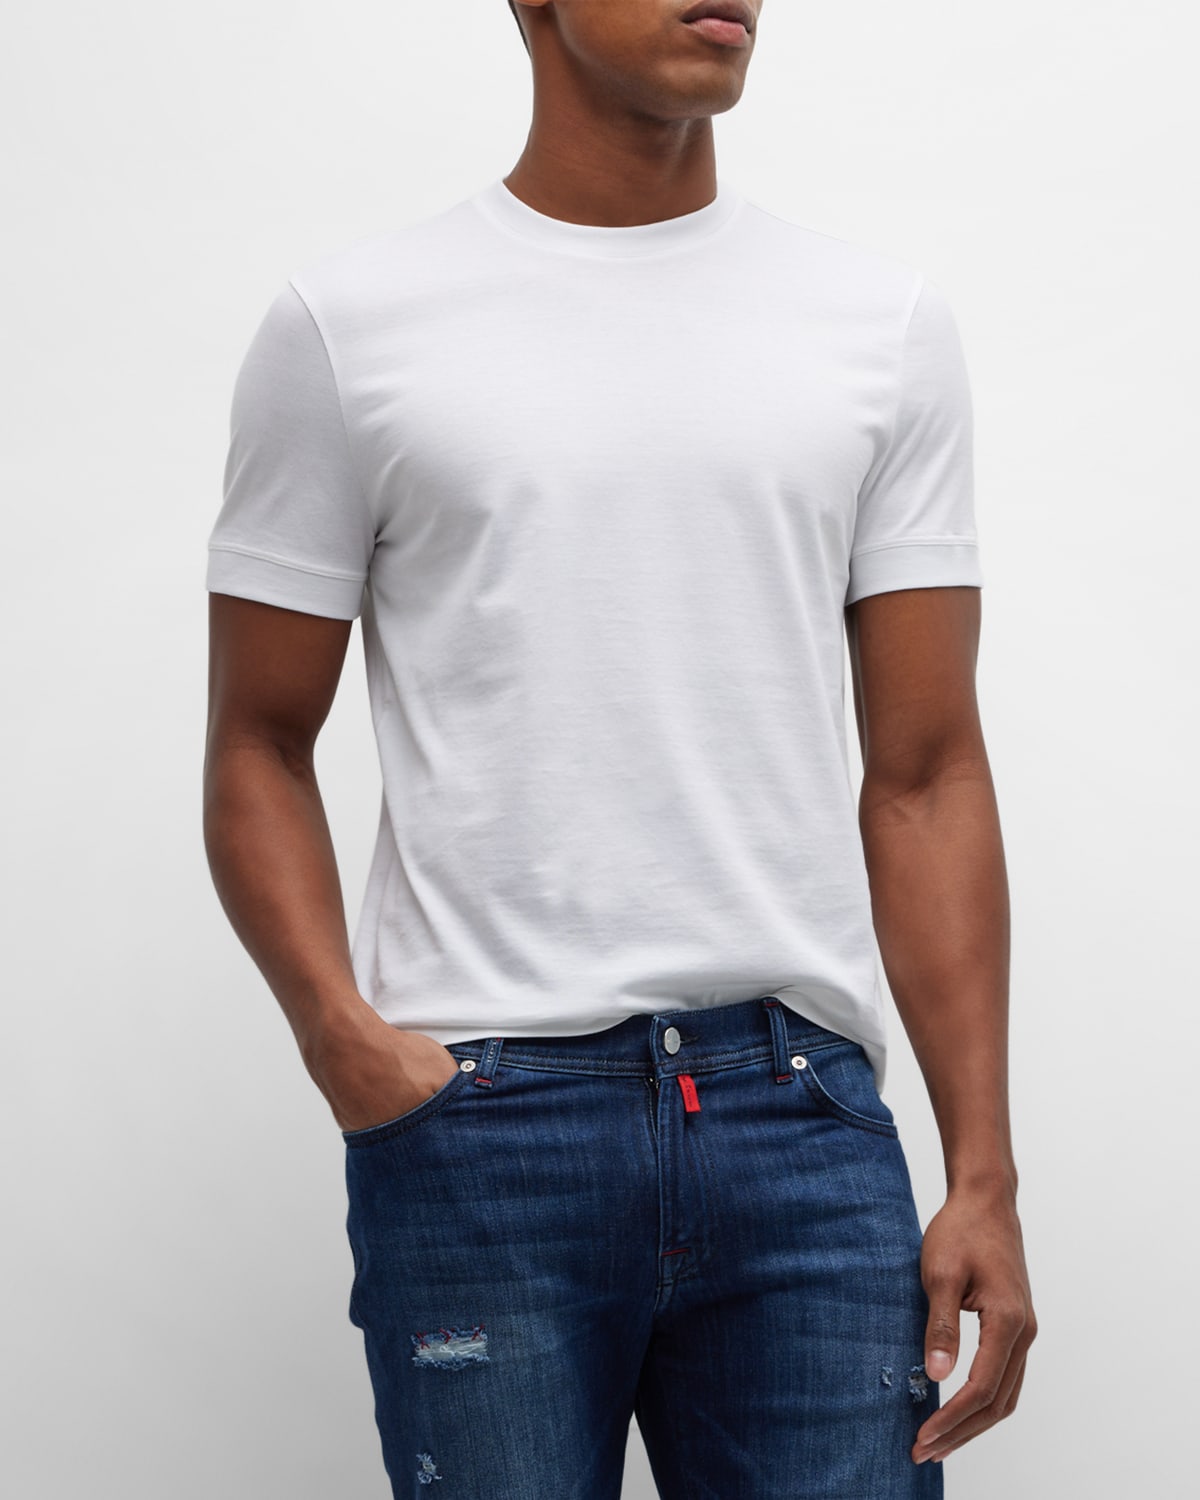 KNT Men's Cotton Crewneck T-Shirt